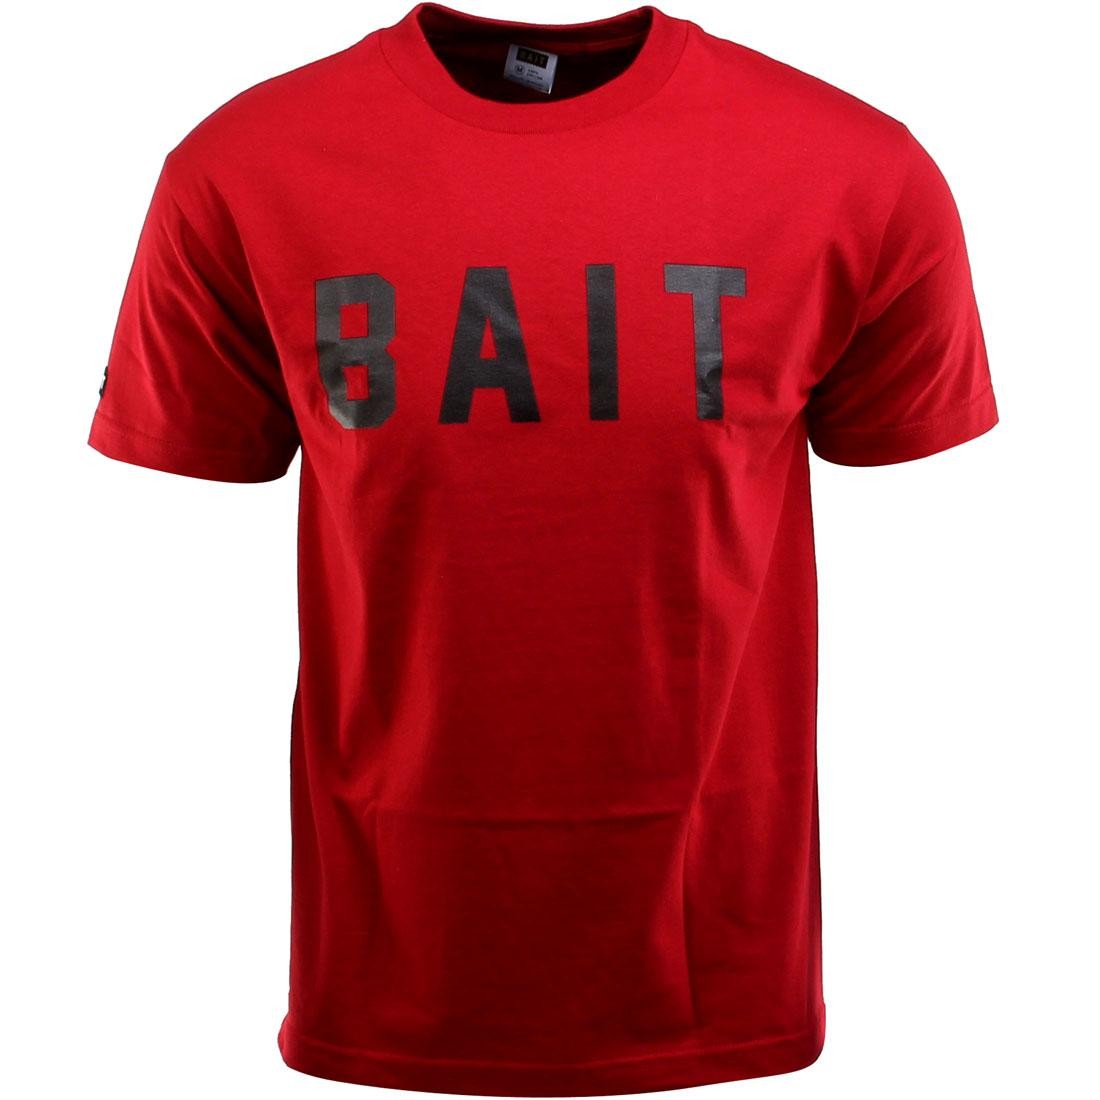 BAIT Logo Tee (red / cardinal red / black)